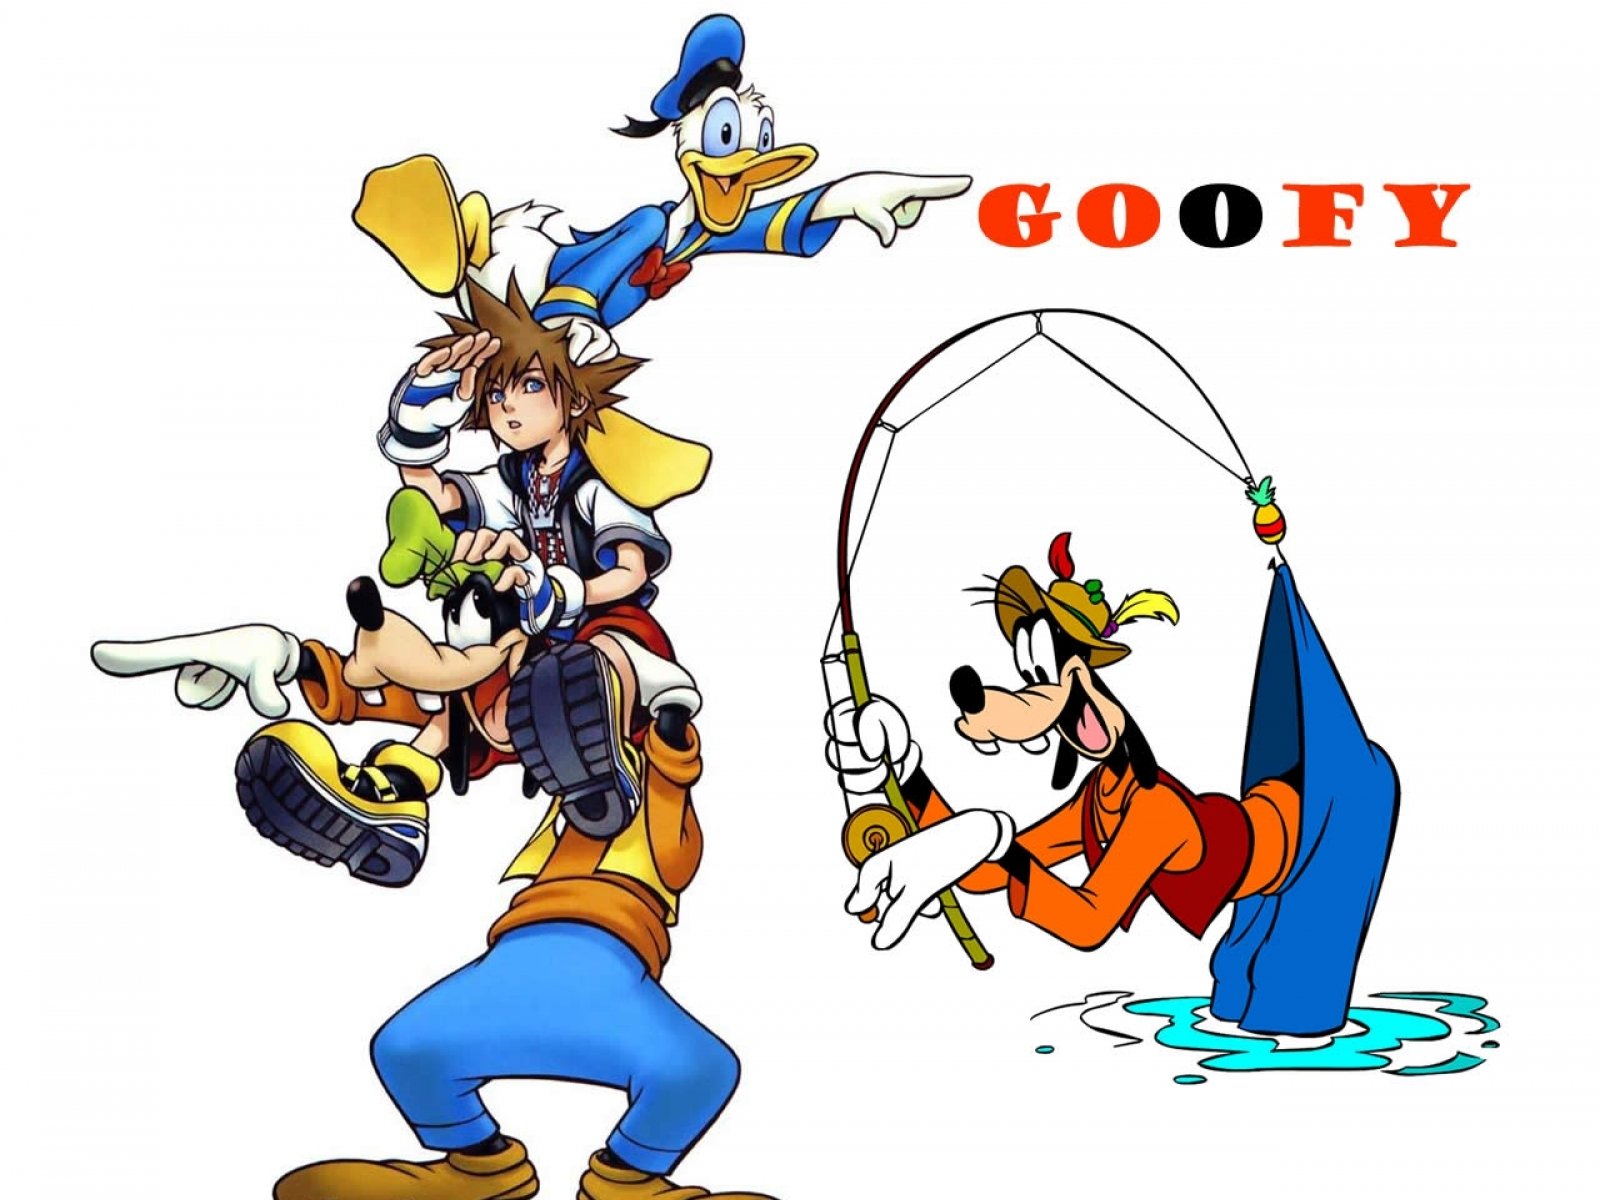 goofy, Disney, Family, Animation, Fantasy, 1goofy, Comedy, Donald, Duck Wallpaper